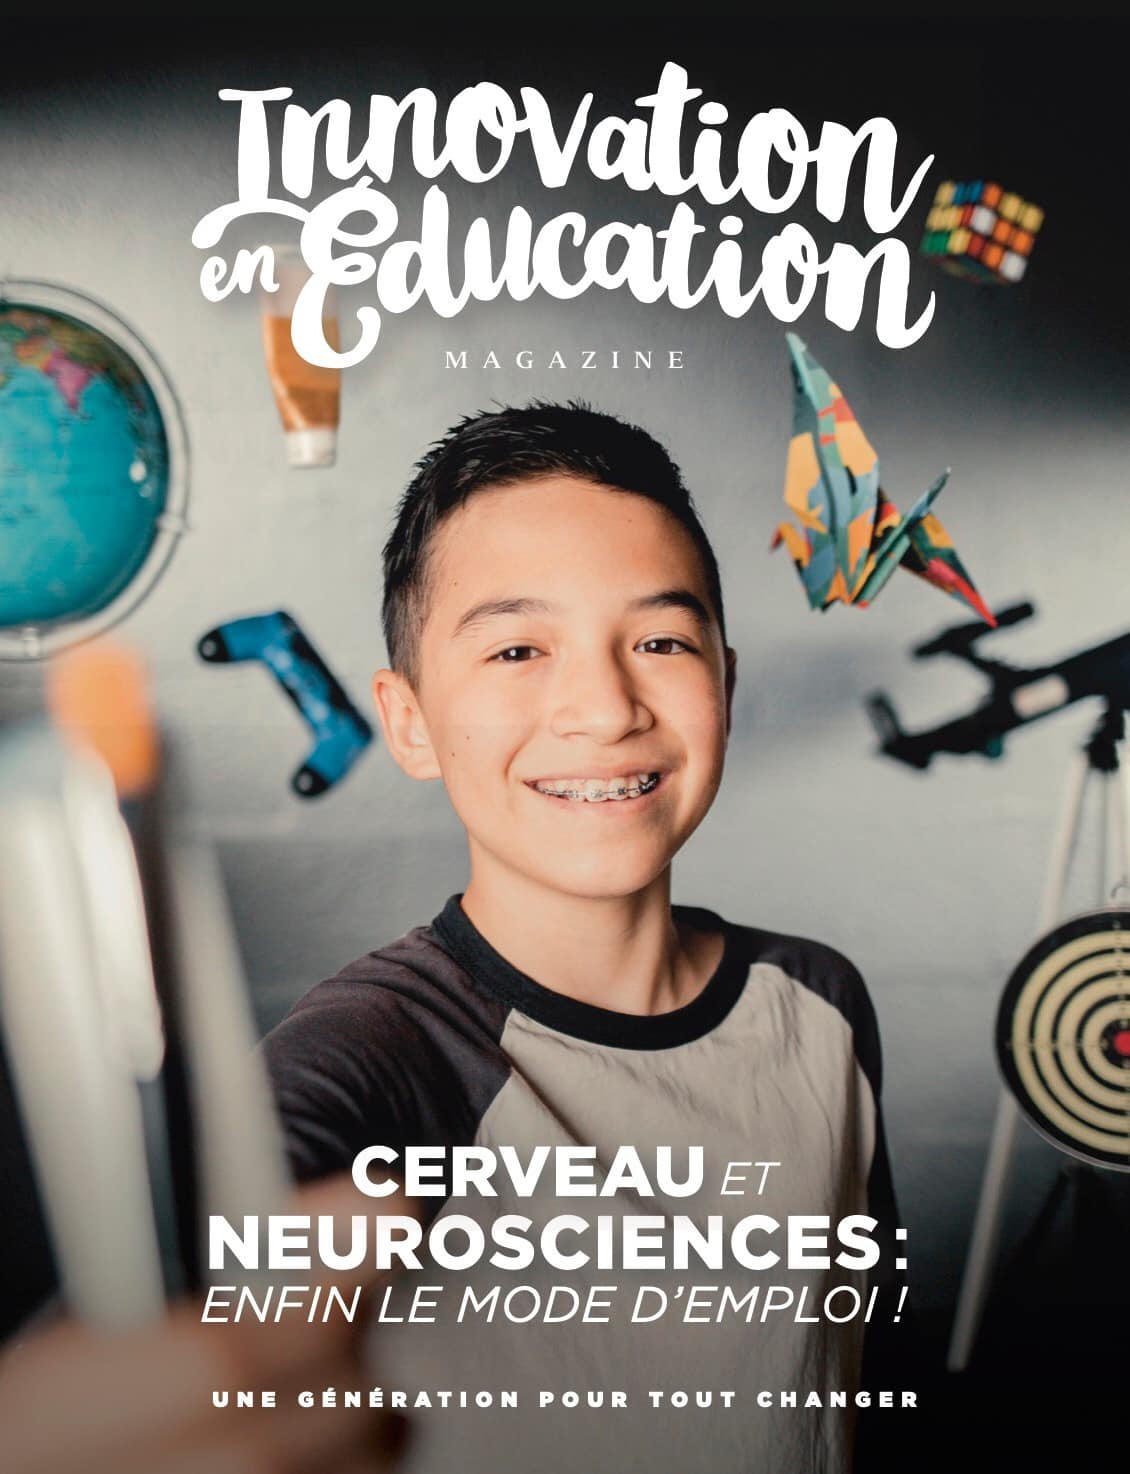 Magazine-Innovation-en-Éducation-2-Cerveau-et-neurosciences-enfin-le-mode-demploi